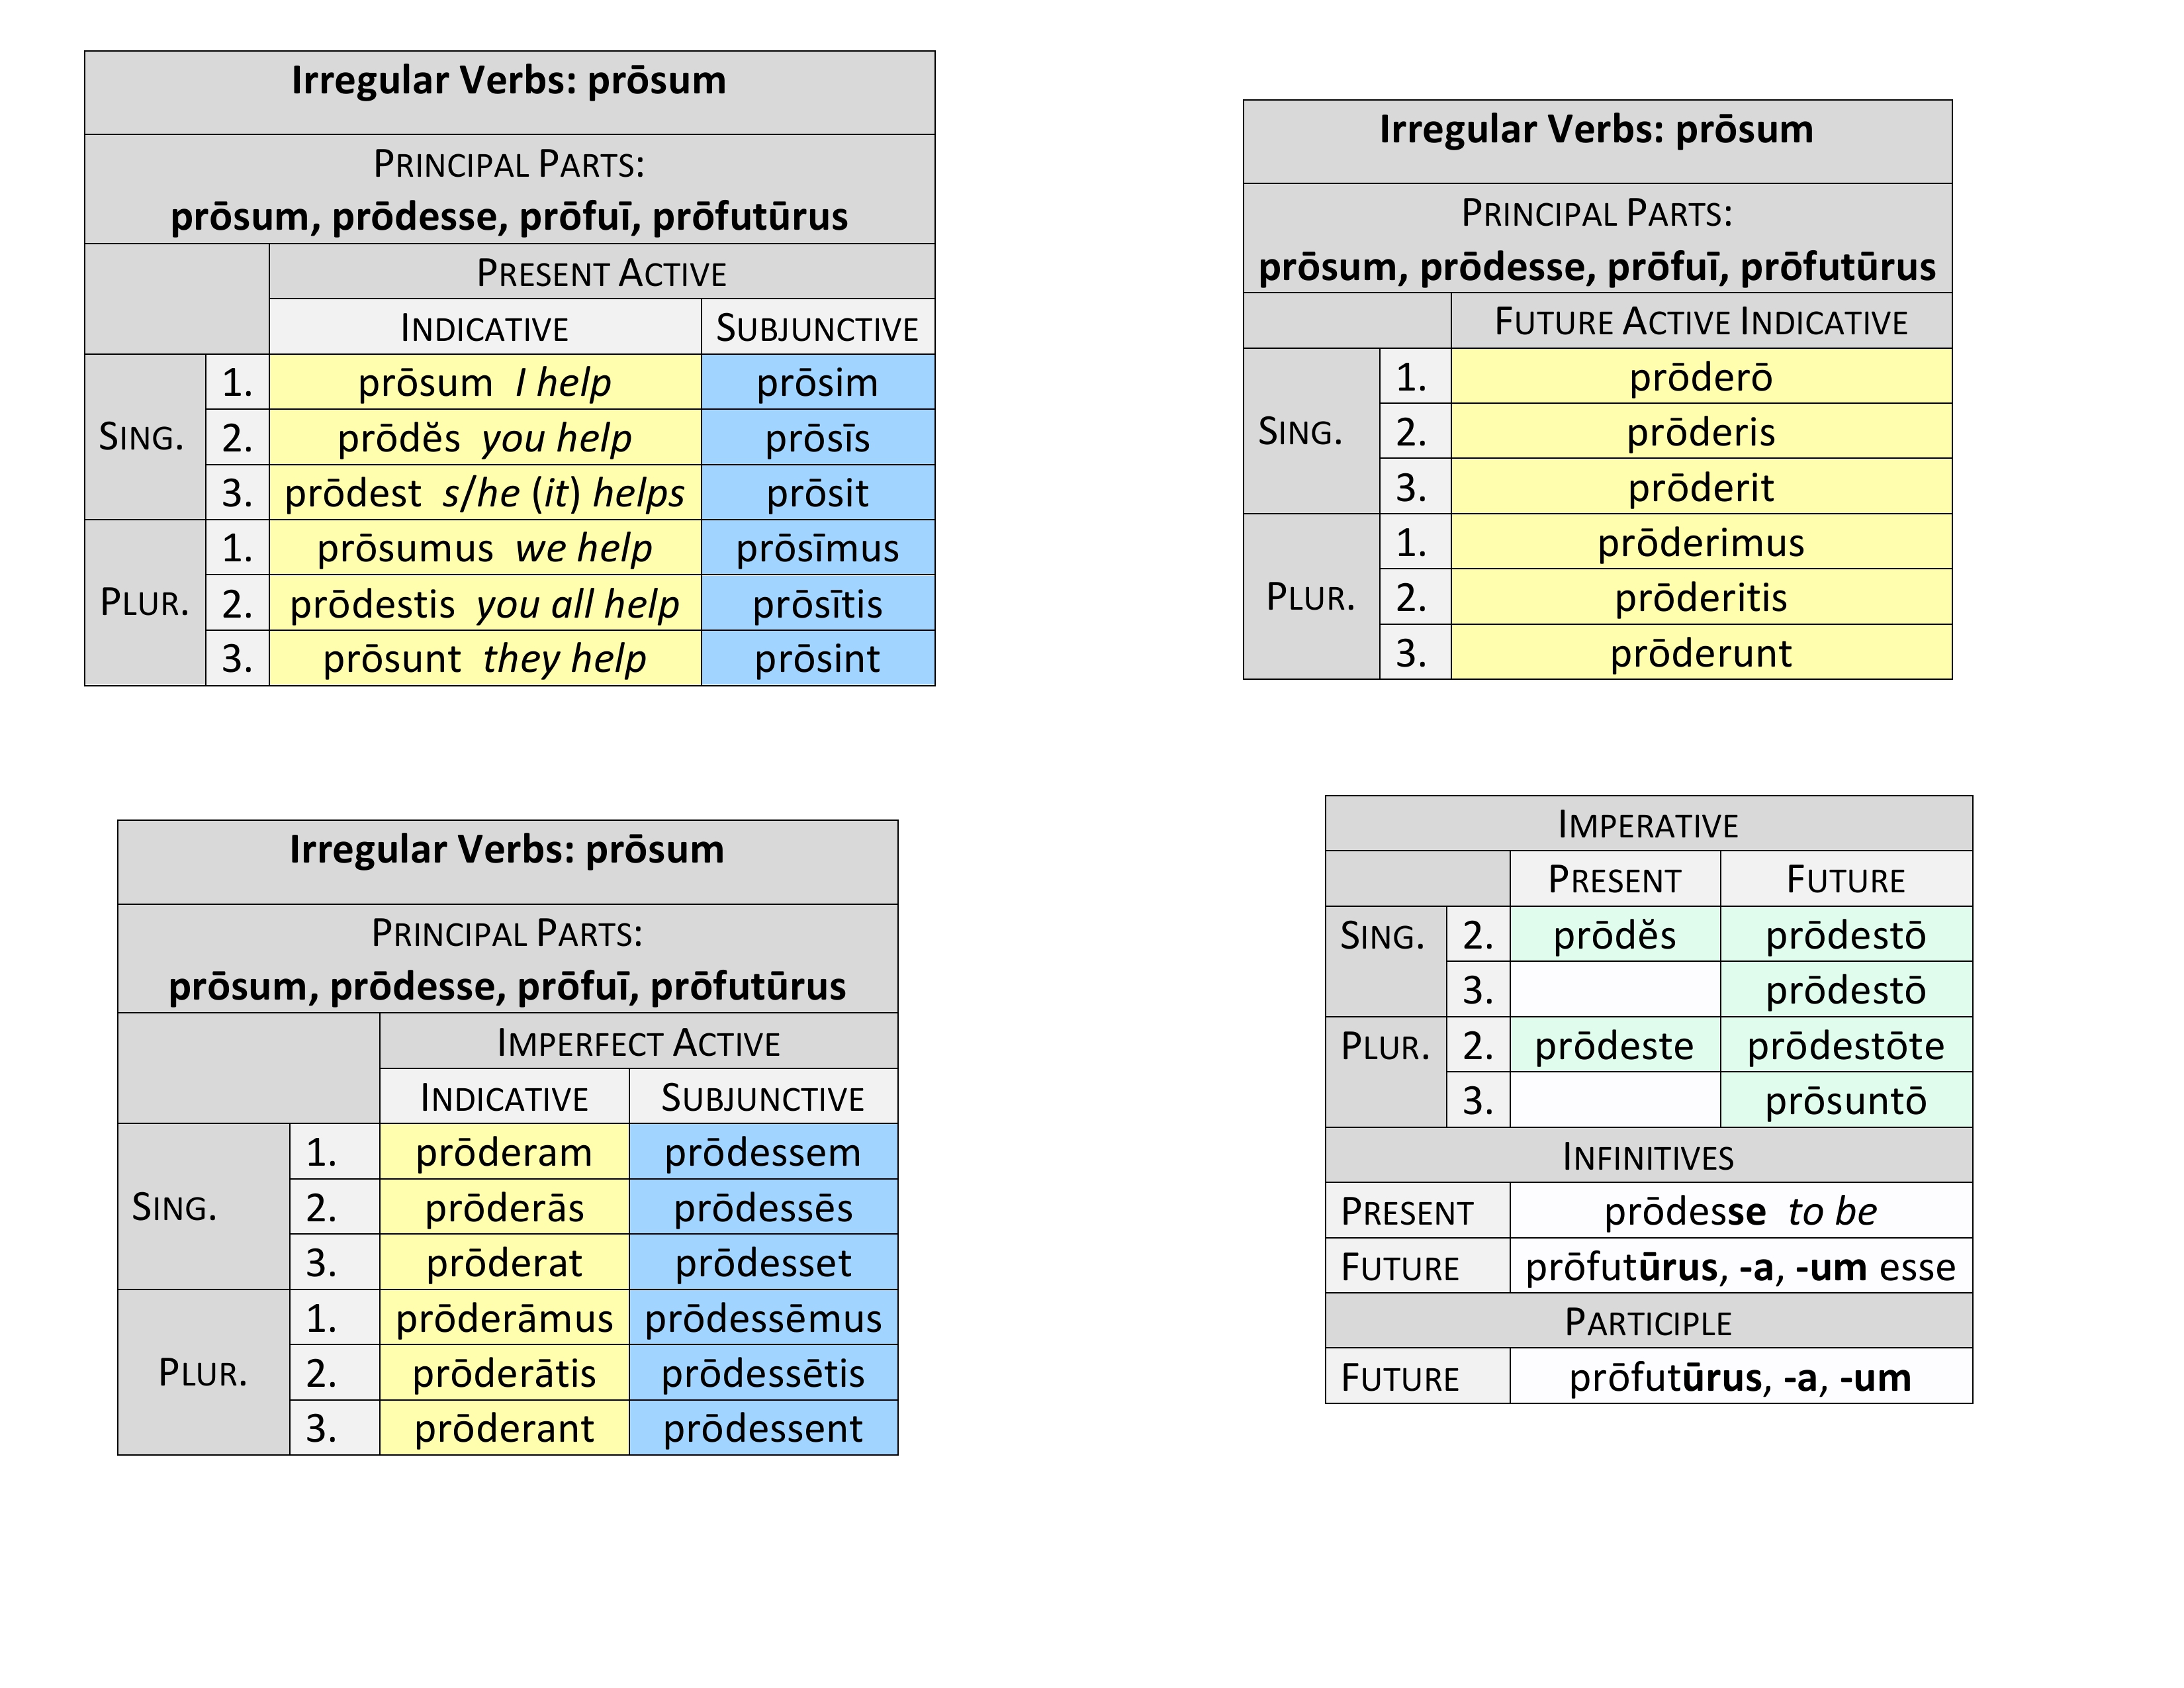 irregular verb prōsum present system synopsis